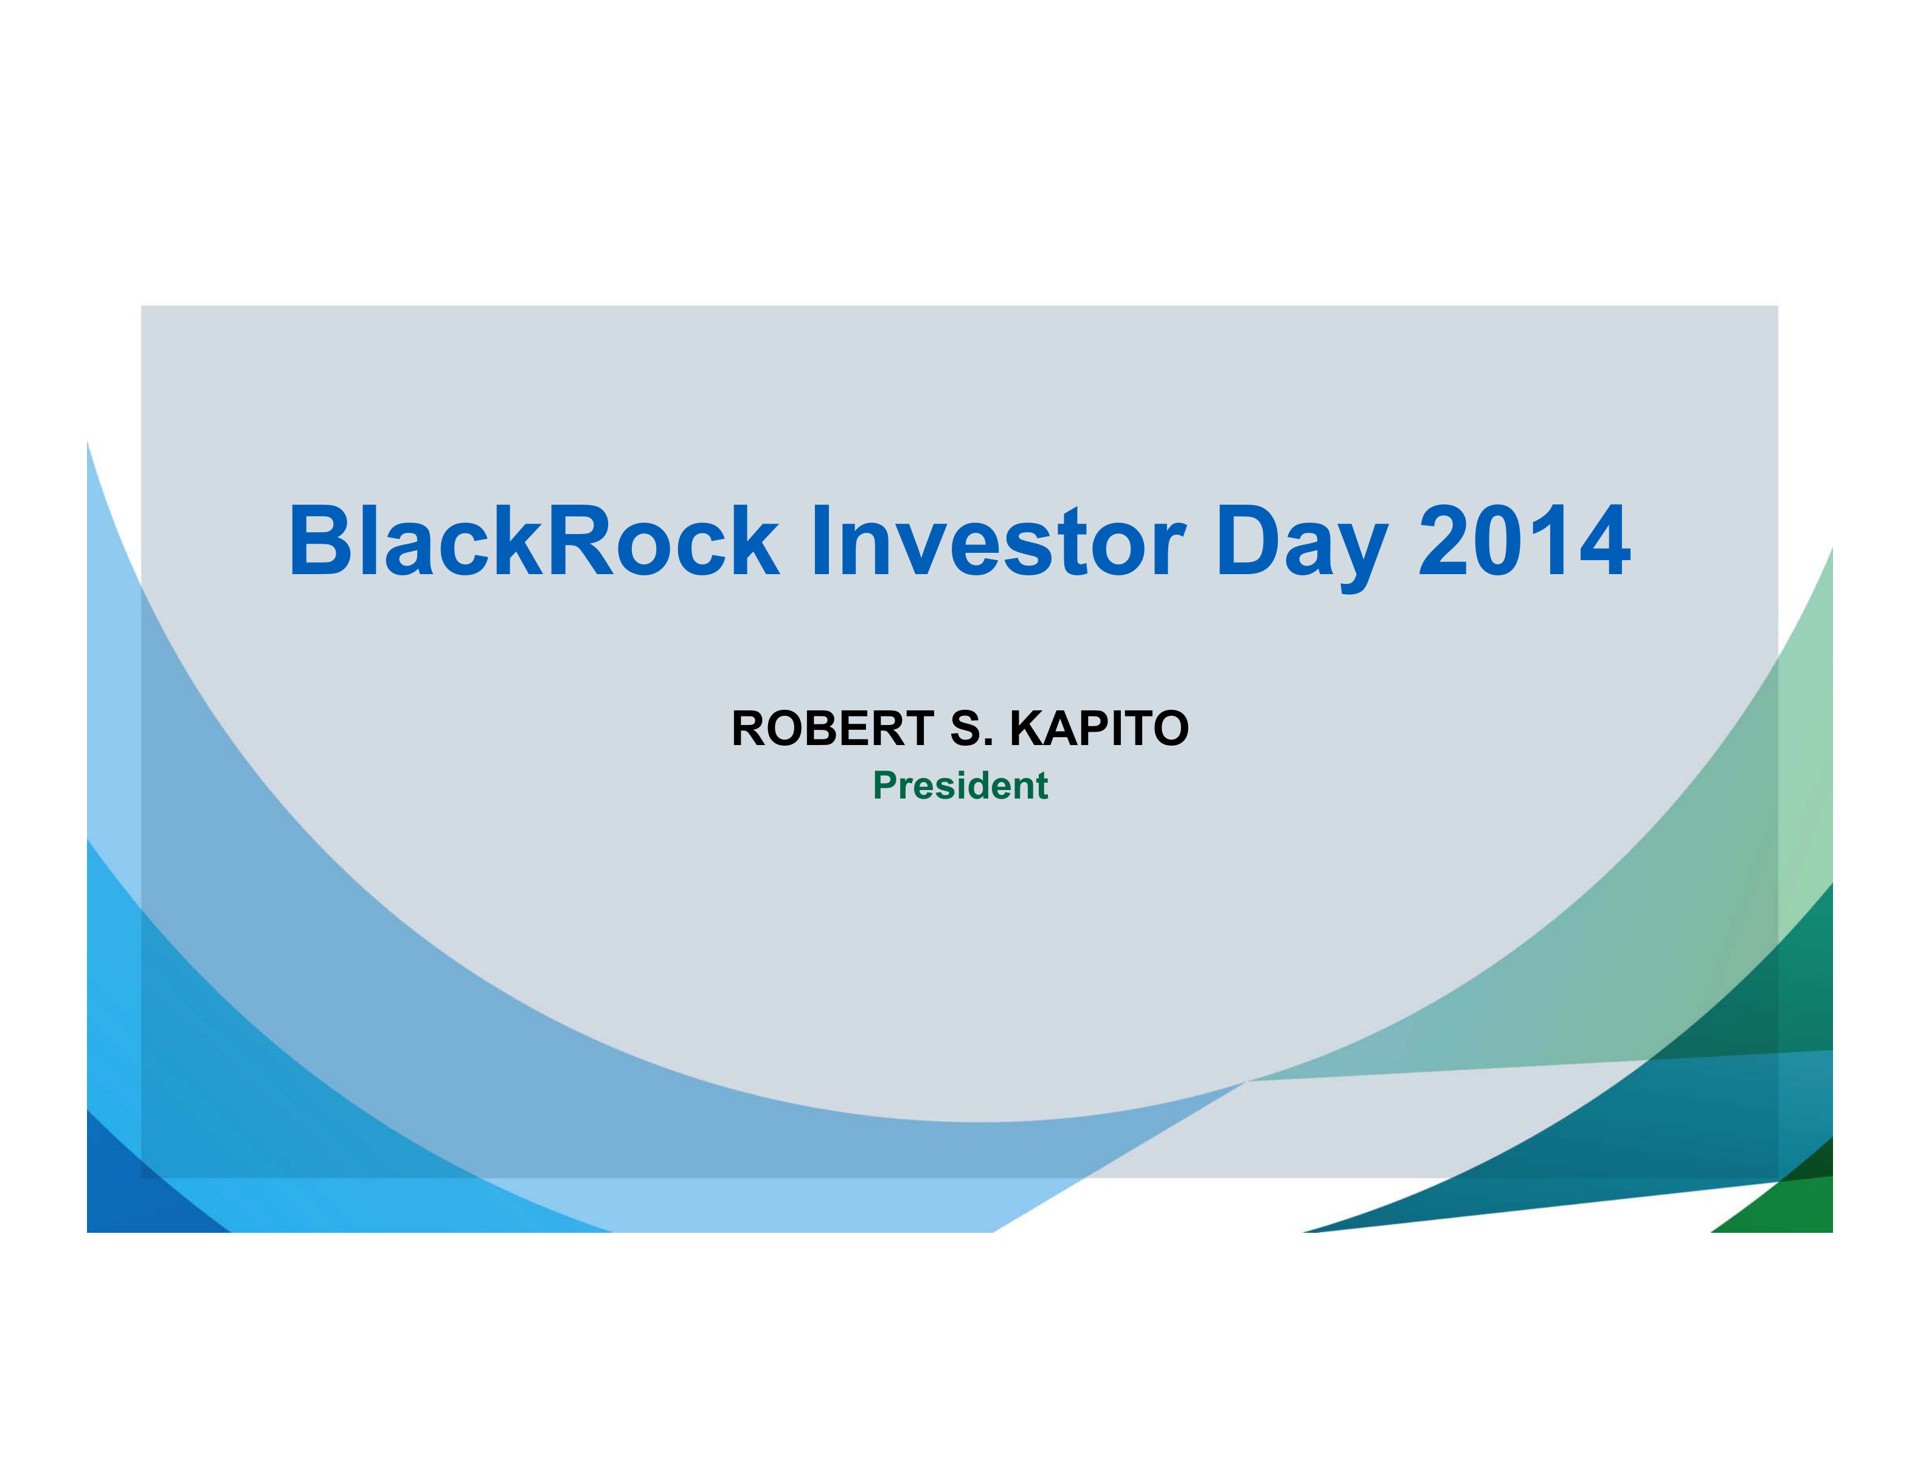 investor day | BlackRock